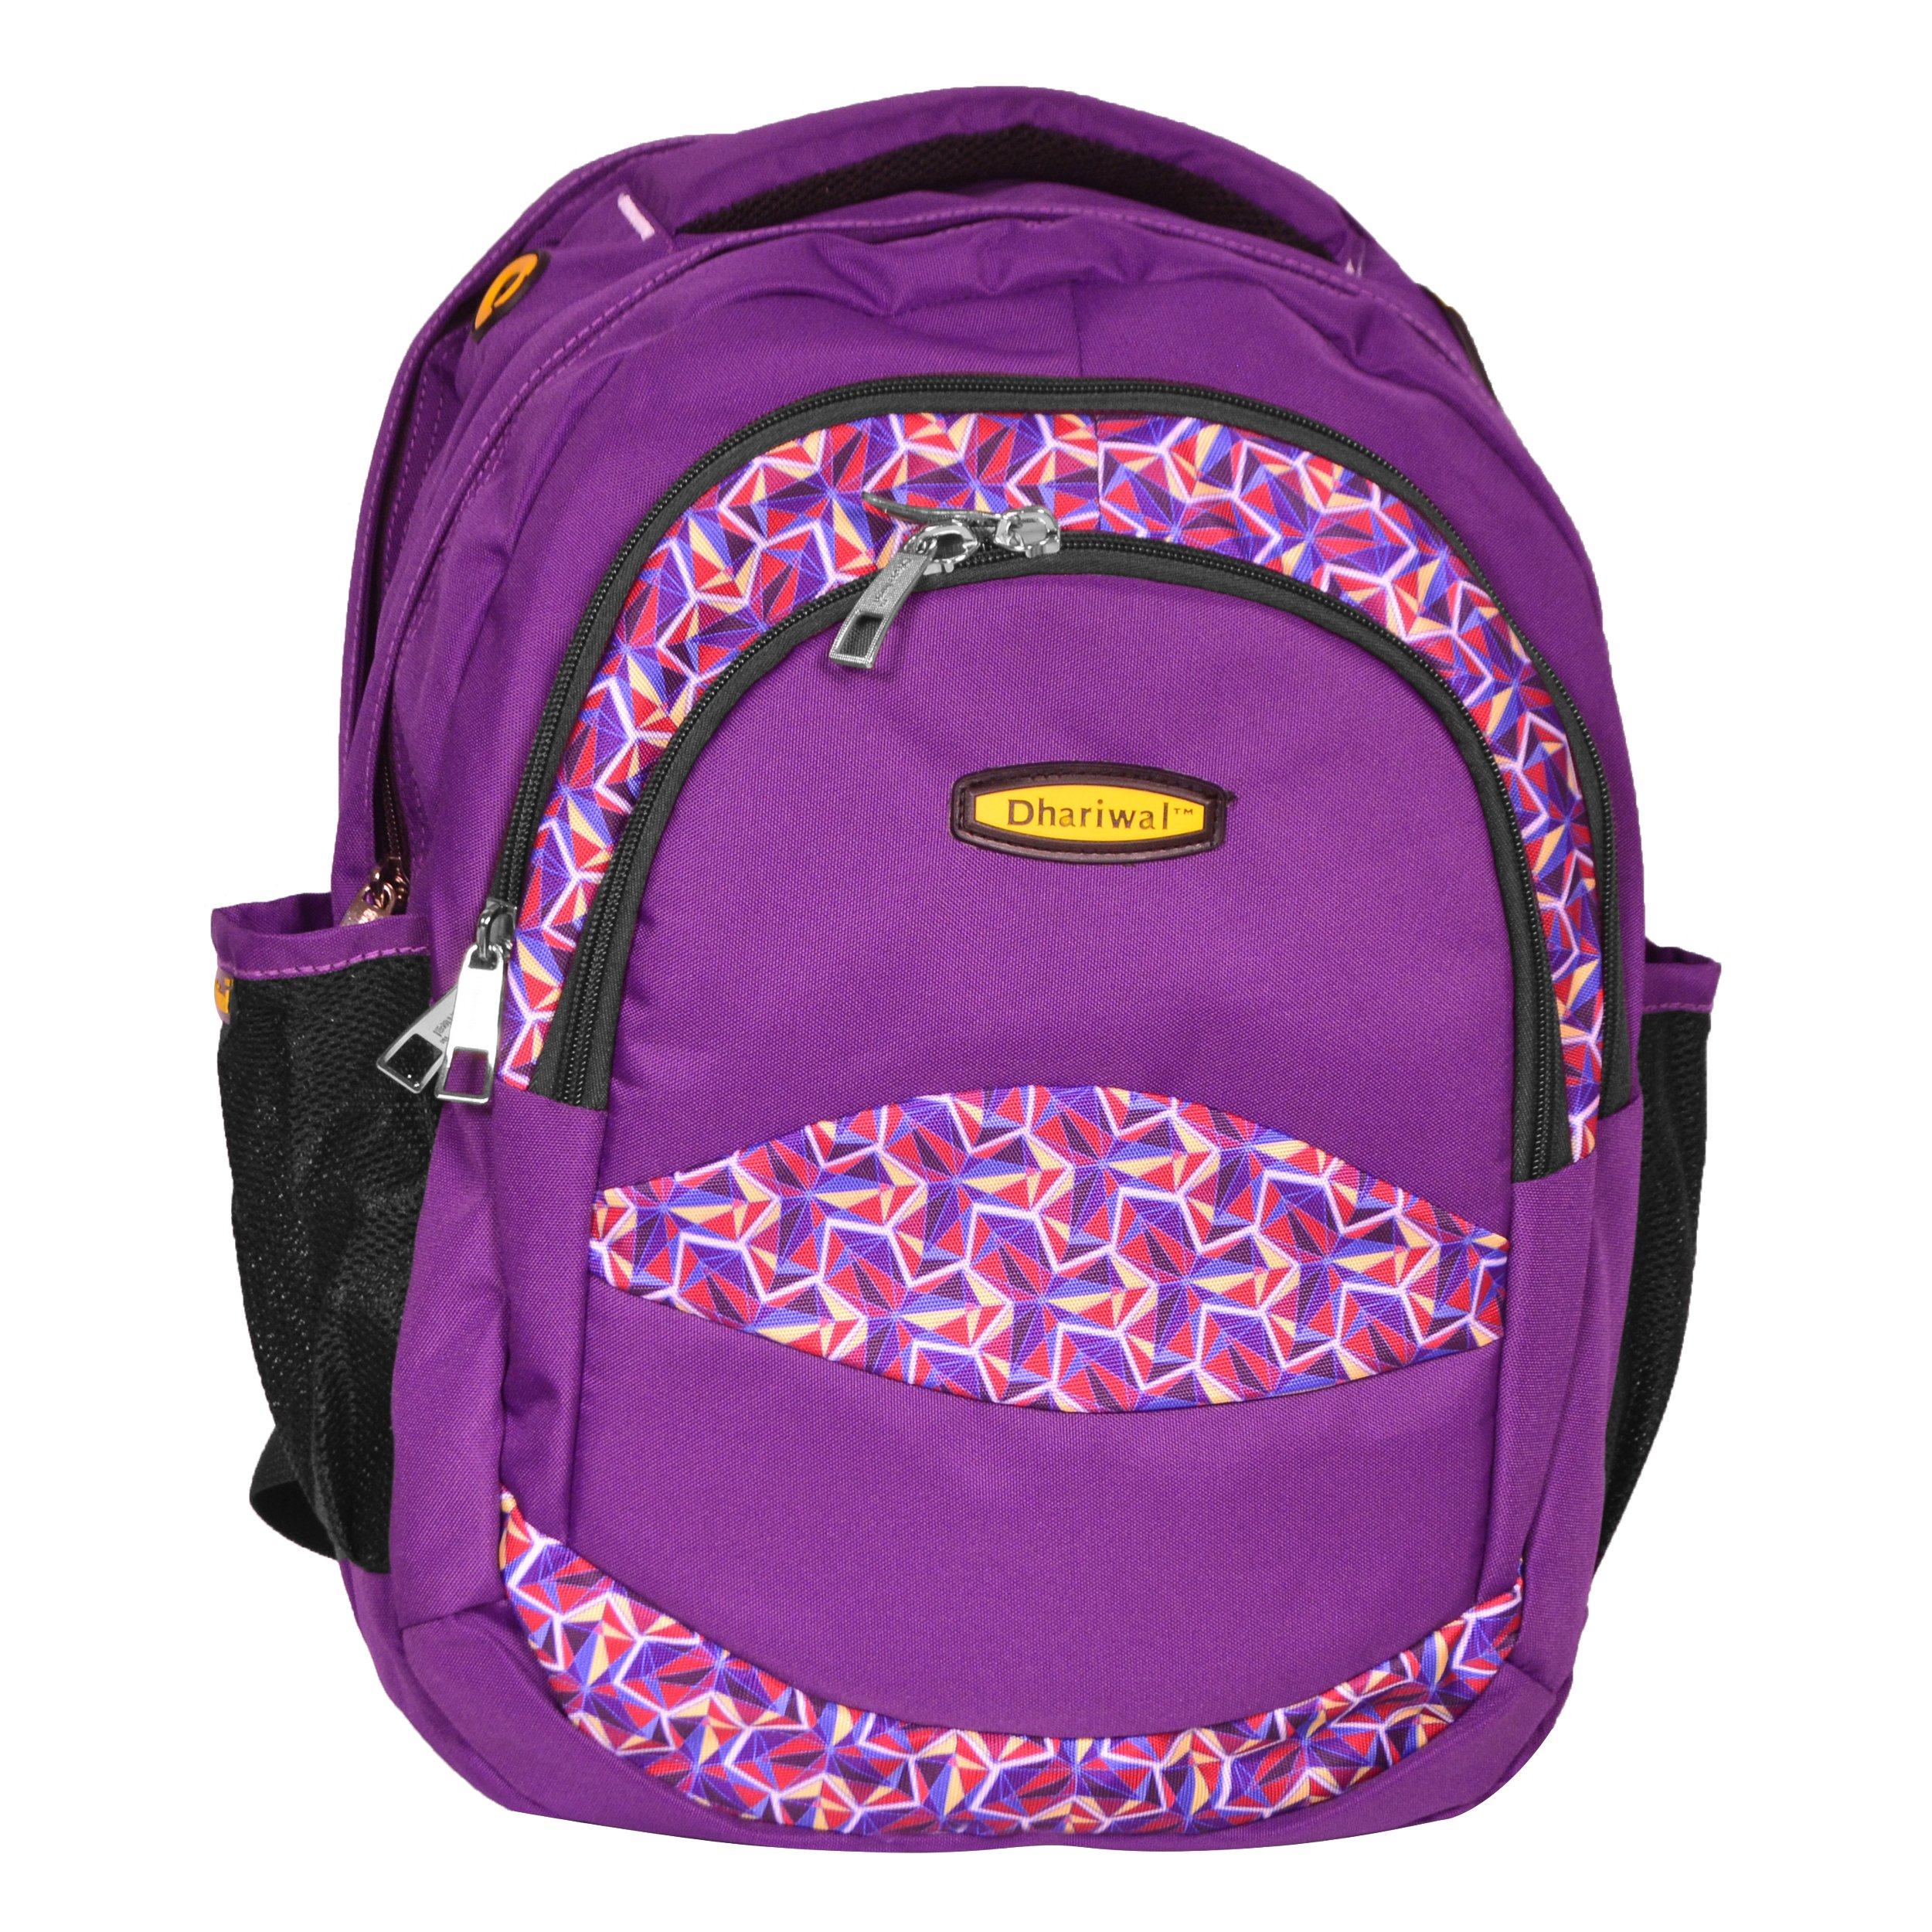 dhariwal multi color dual compartment unisex printed school backpack 39l bp 203 school bags dhariwal purple 987203